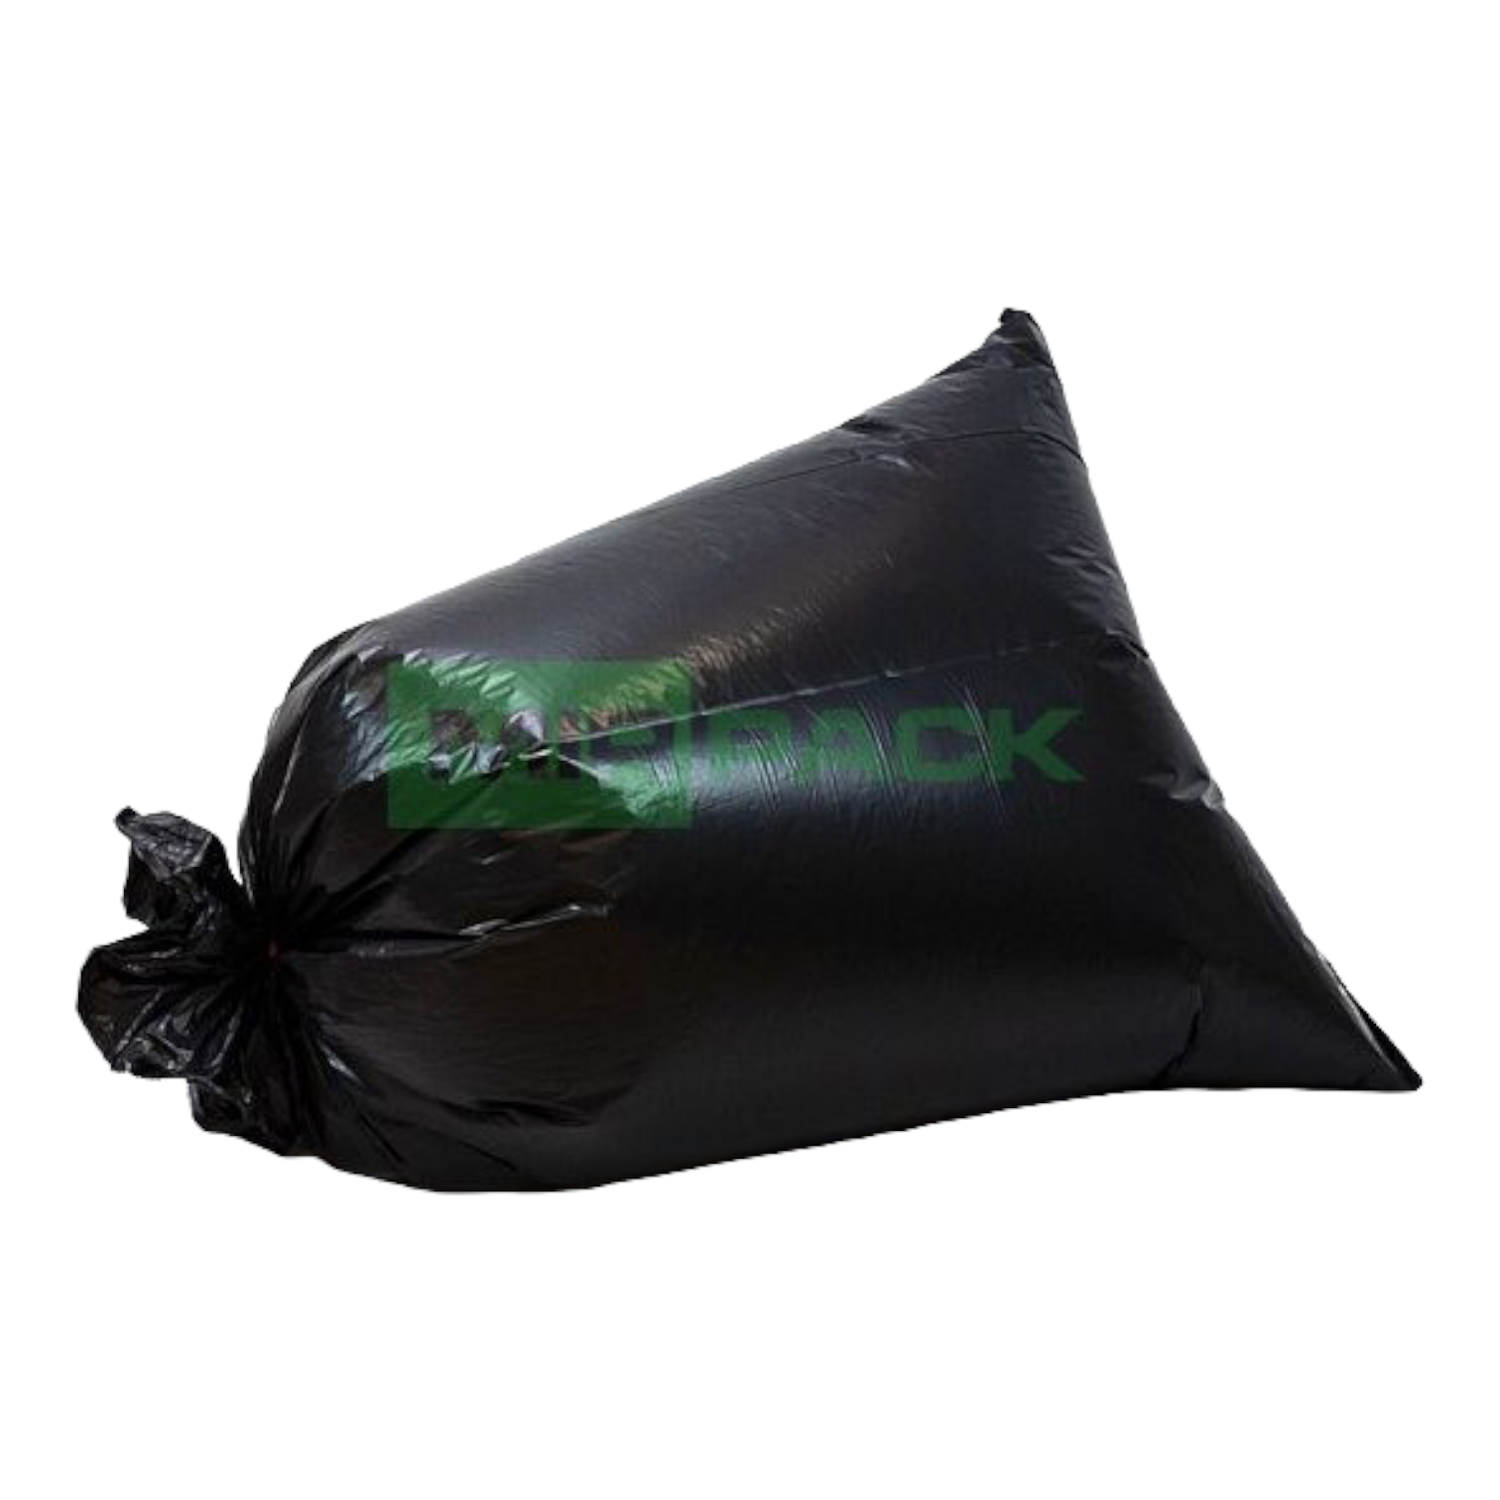 Мешки для мусора МешокRU 120 литров 70х110 см черные в рулоне - фото 13